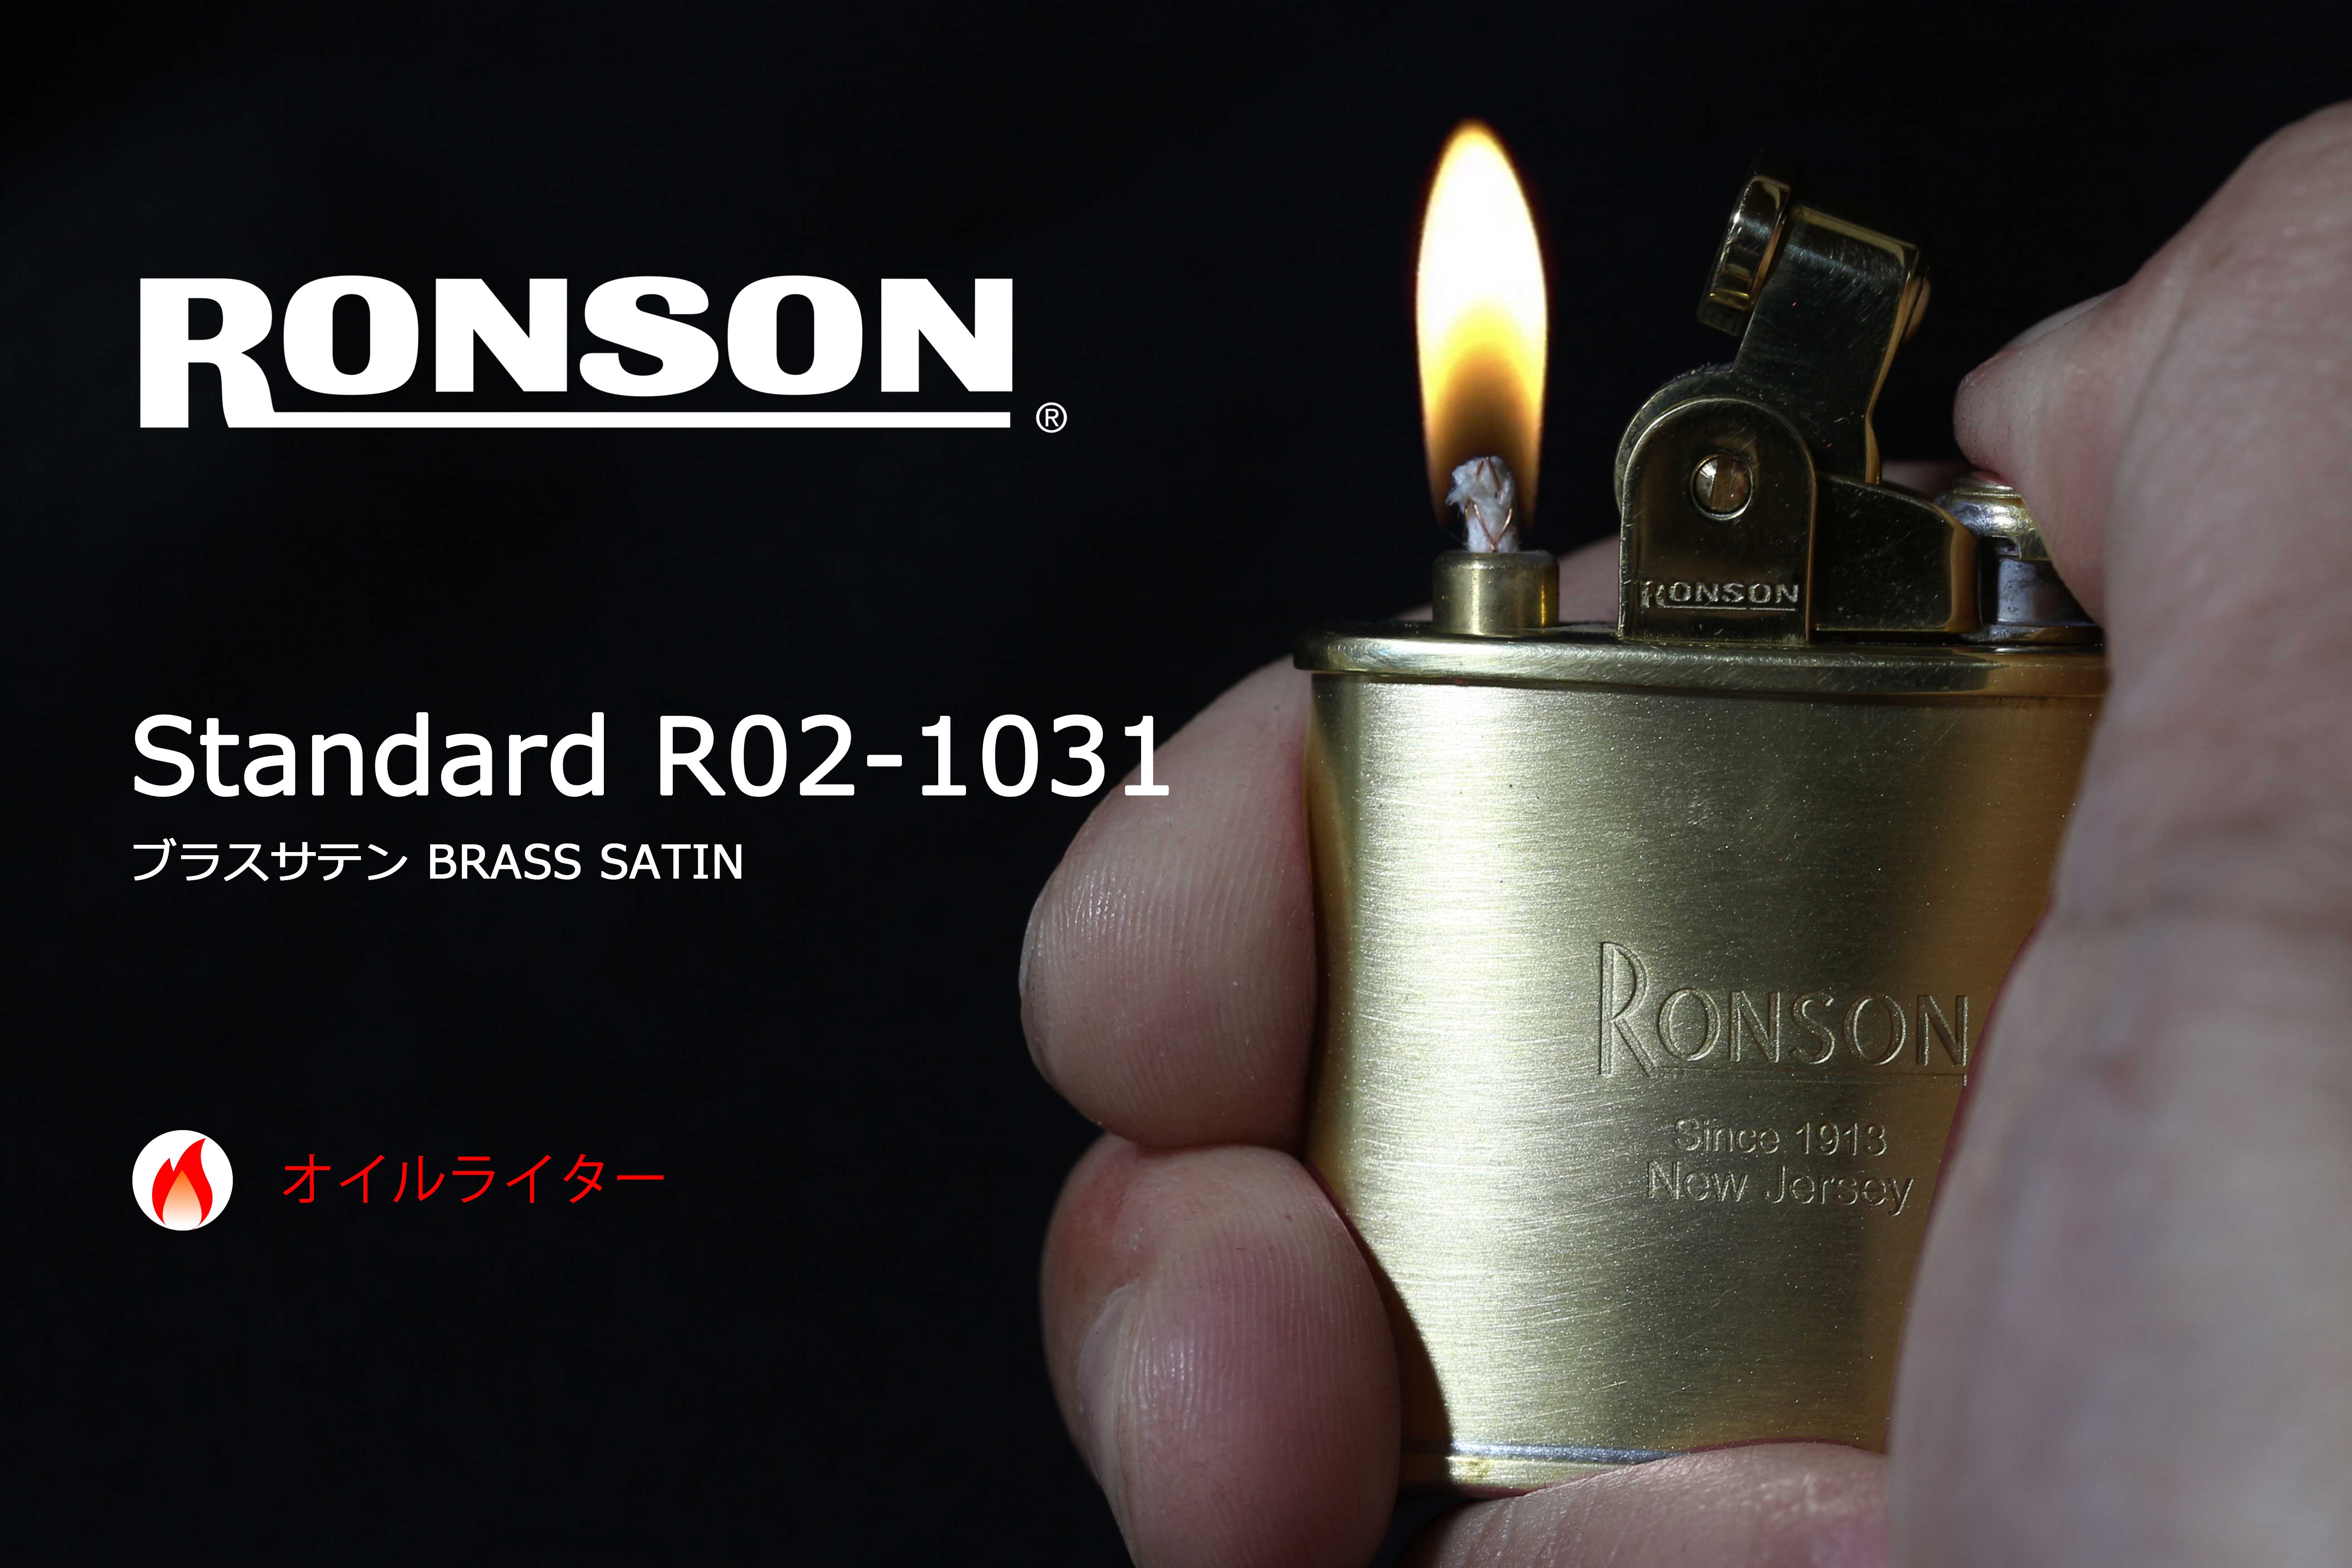 ロンソン RONSON PETITE オイルライター - タバコグッズ